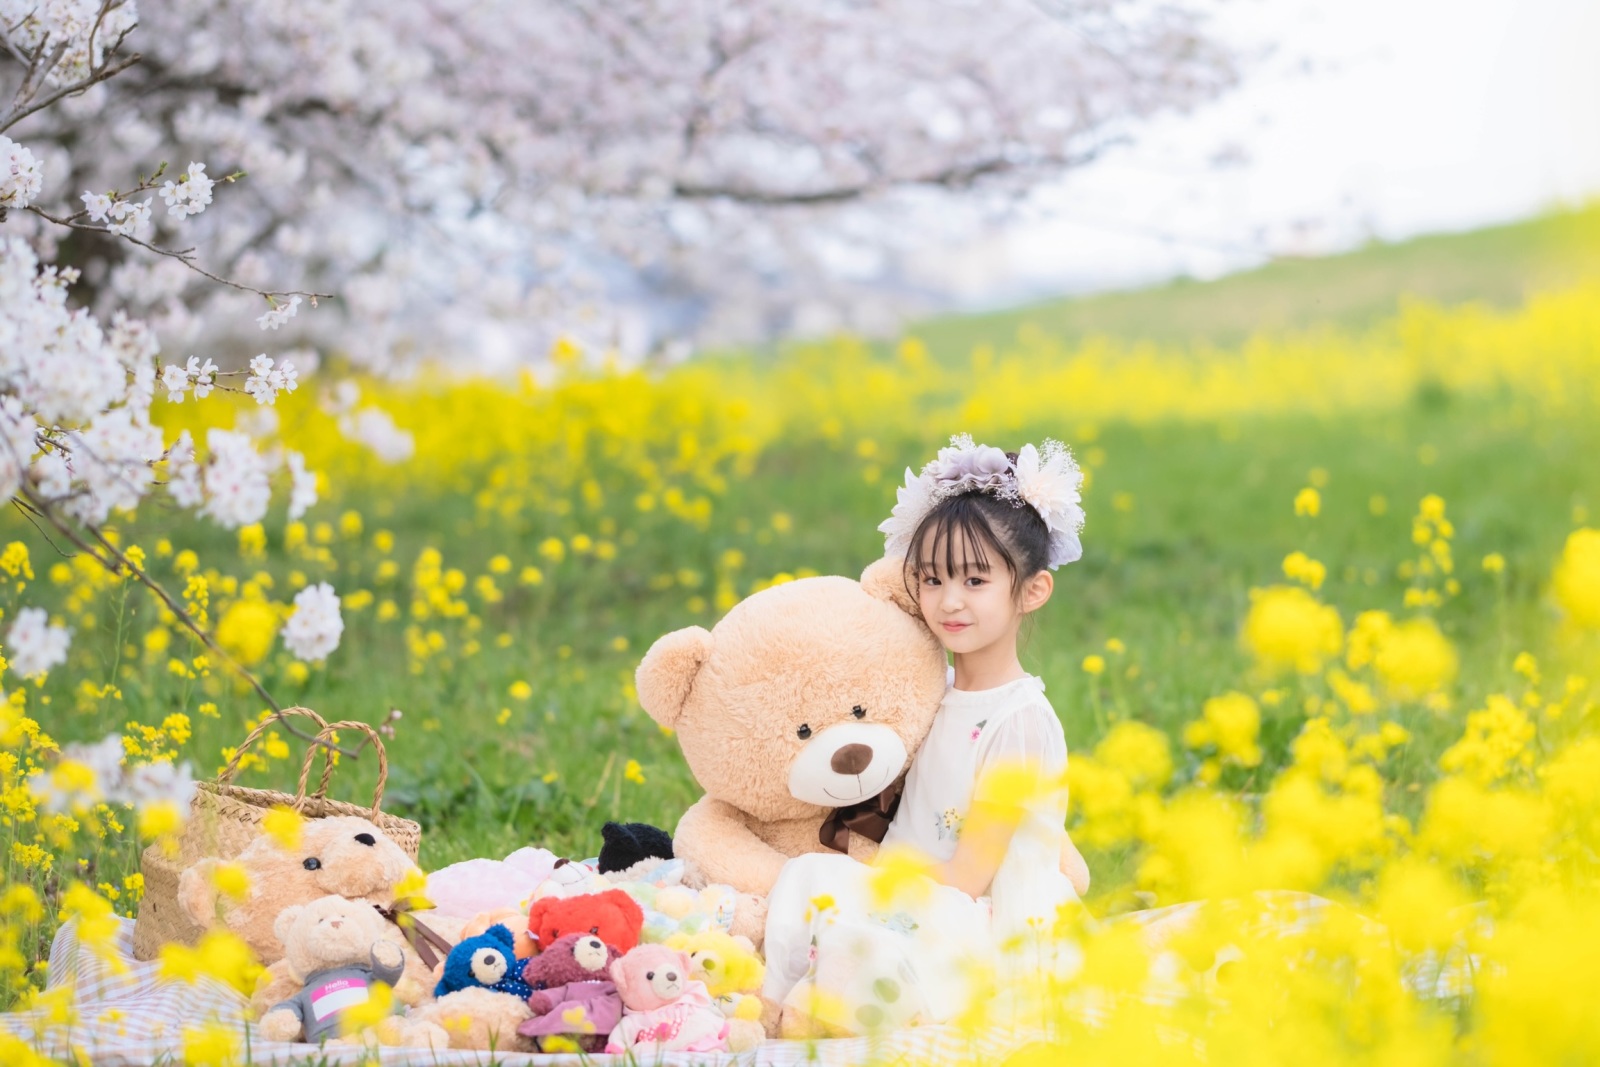 桜と菜の花に囲まれた娘さんの写真